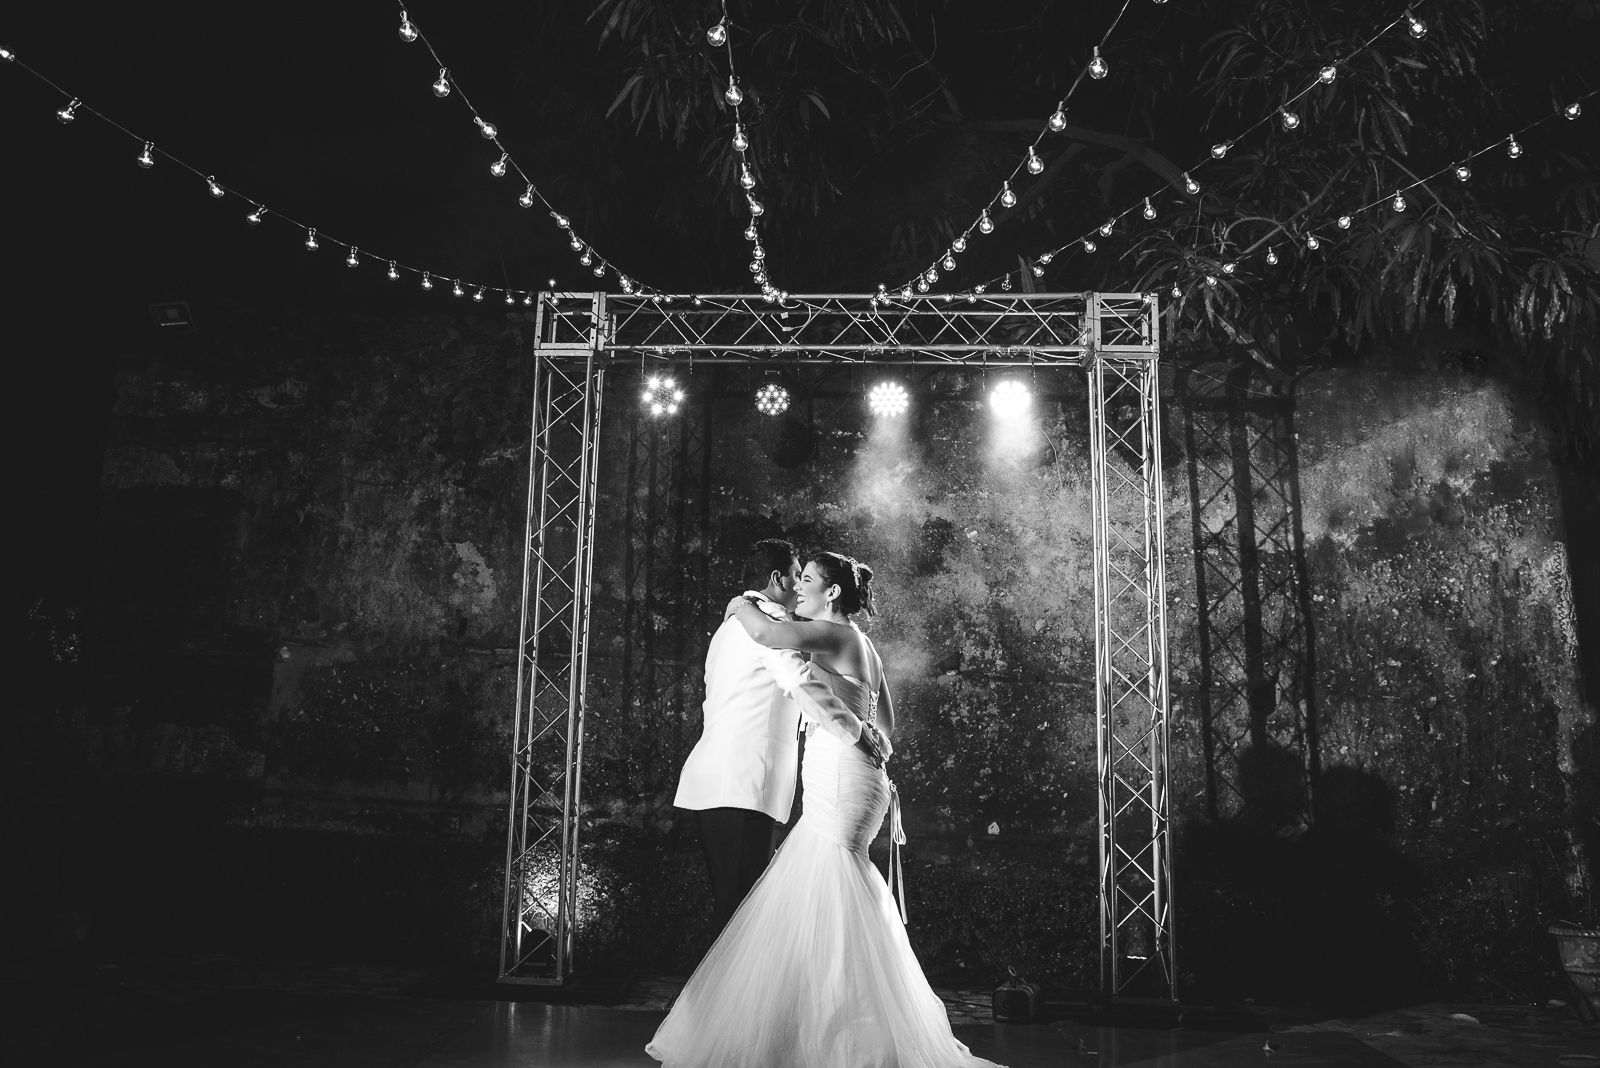 Recepcion de la boda de Lyonella y Carlos en Quinta Dominicana en Santo Domingo, Republica Dominicana